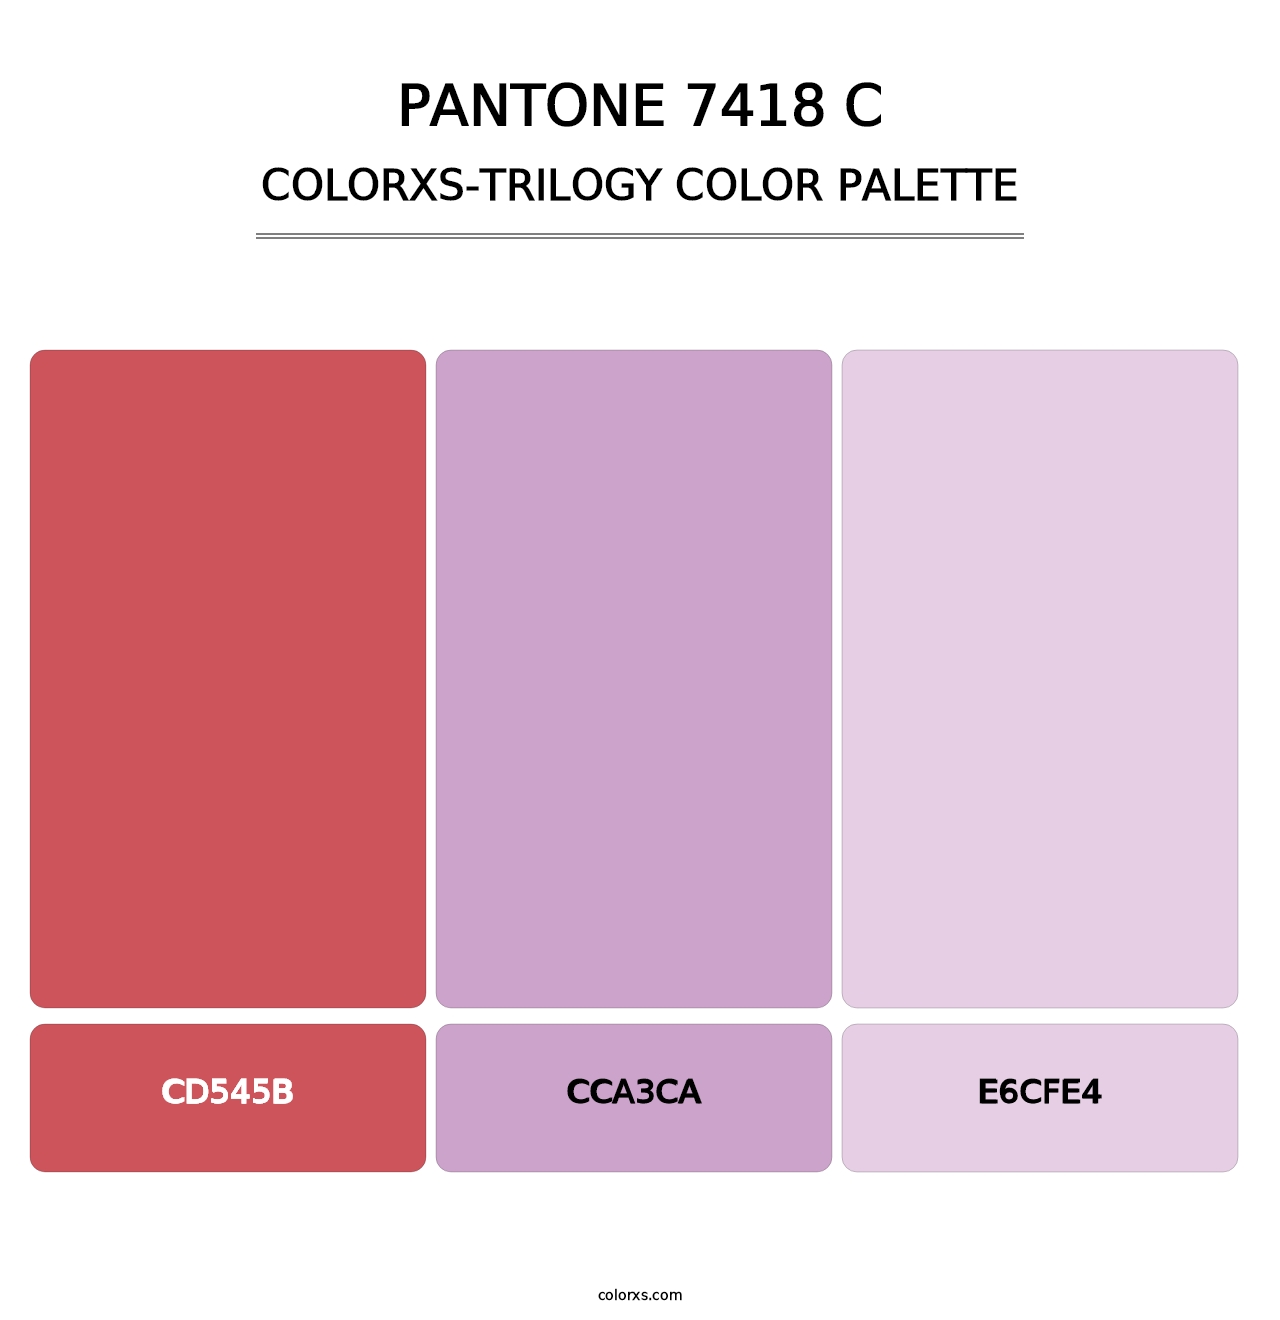 PANTONE 7418 C - Colorxs Trilogy Palette